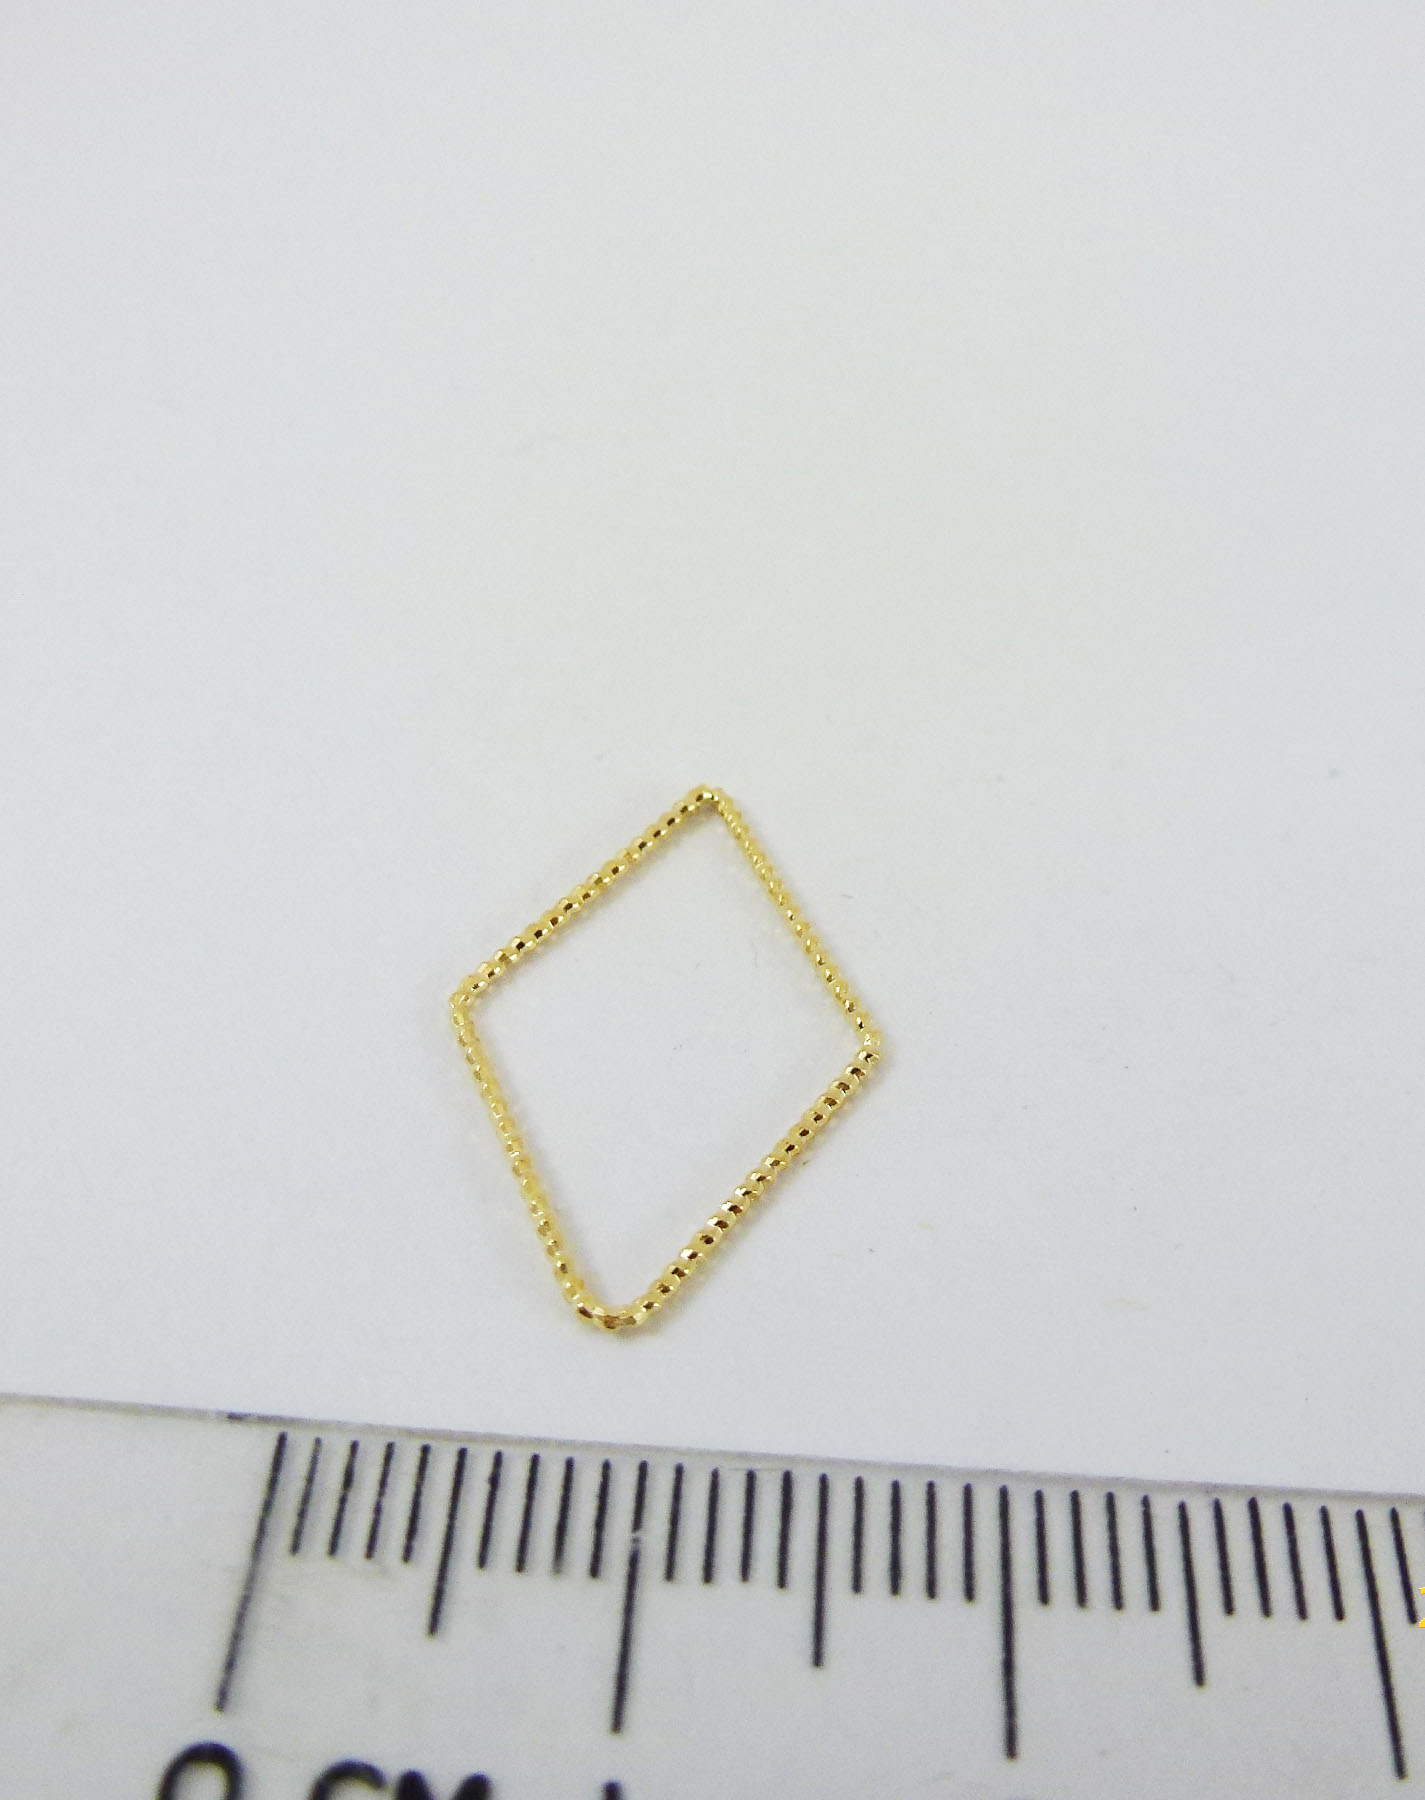 22mm銅鍍金色螺紋菱形